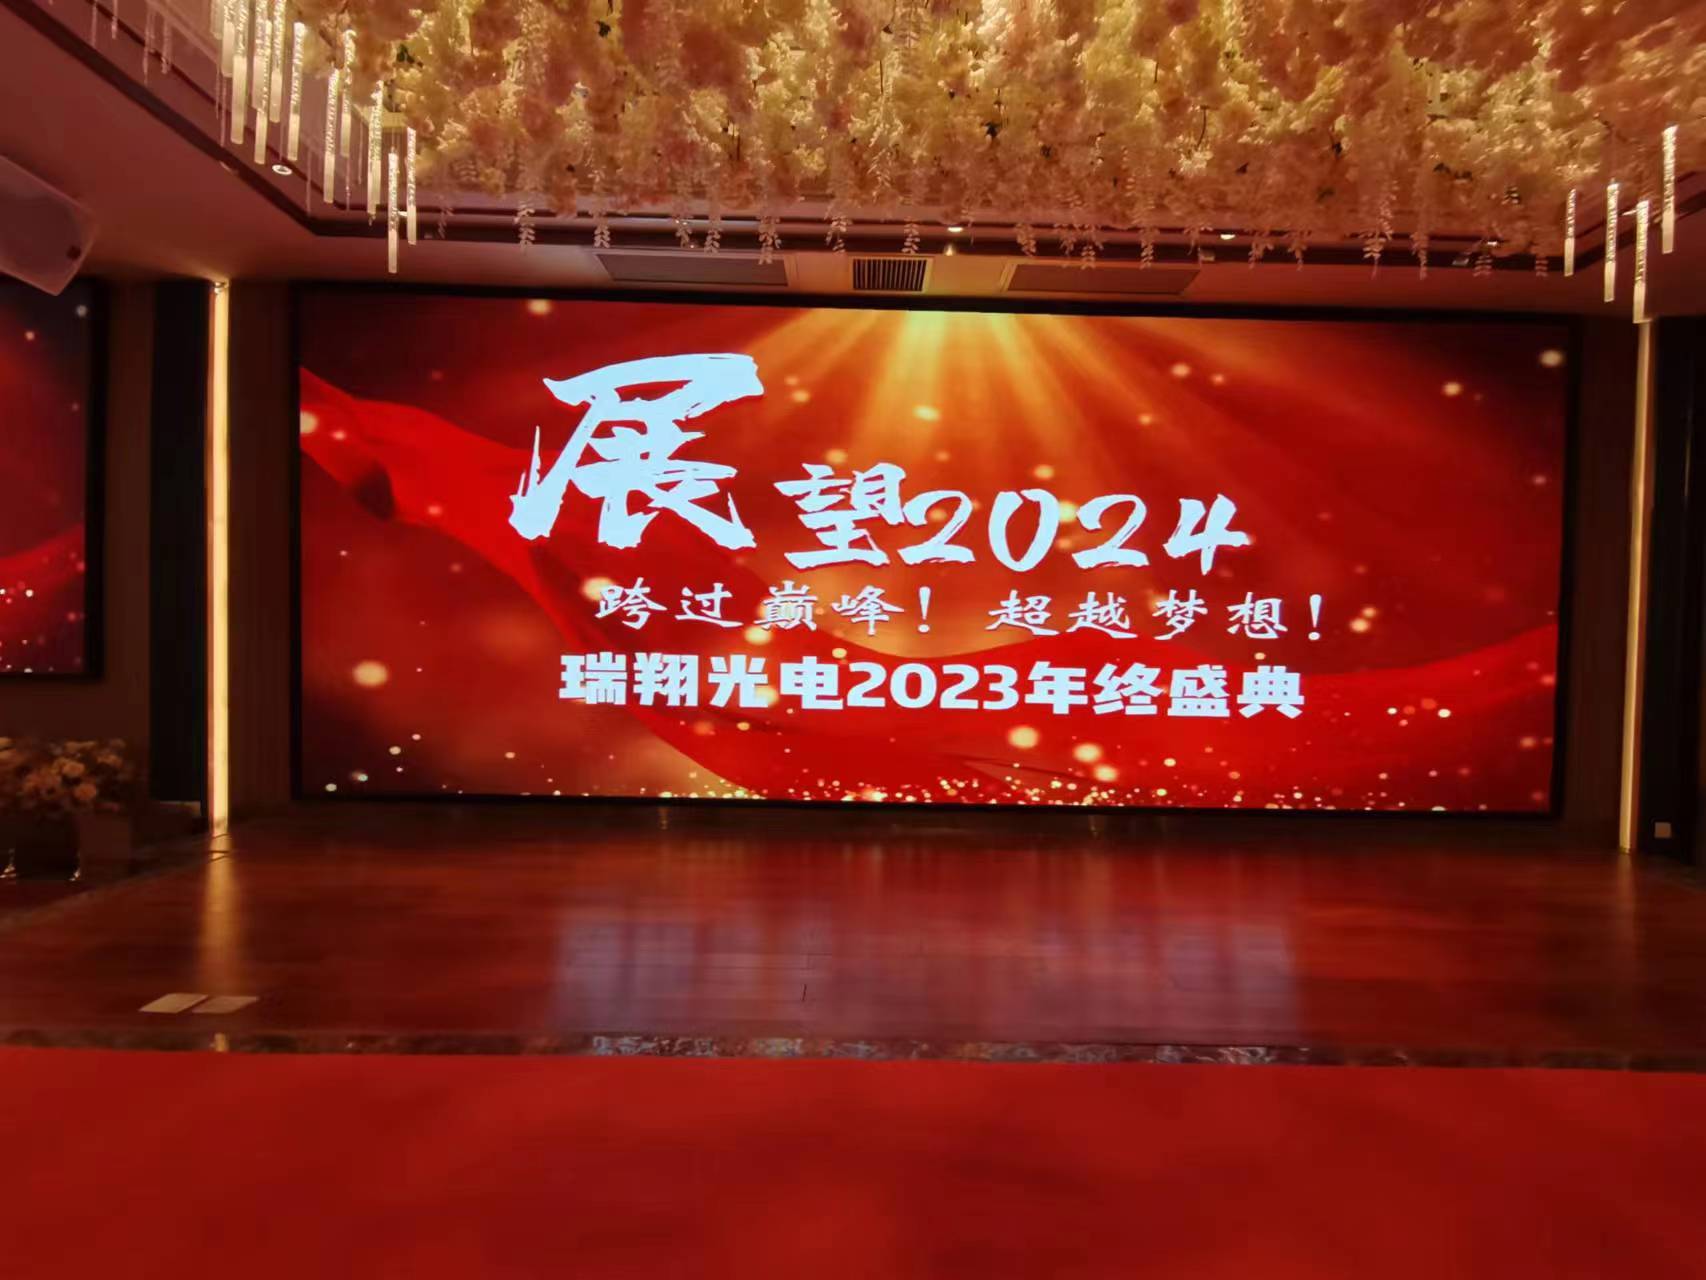 Impreza na zakończenie roku Ruixiang 2023 dla wszystkich pracowników